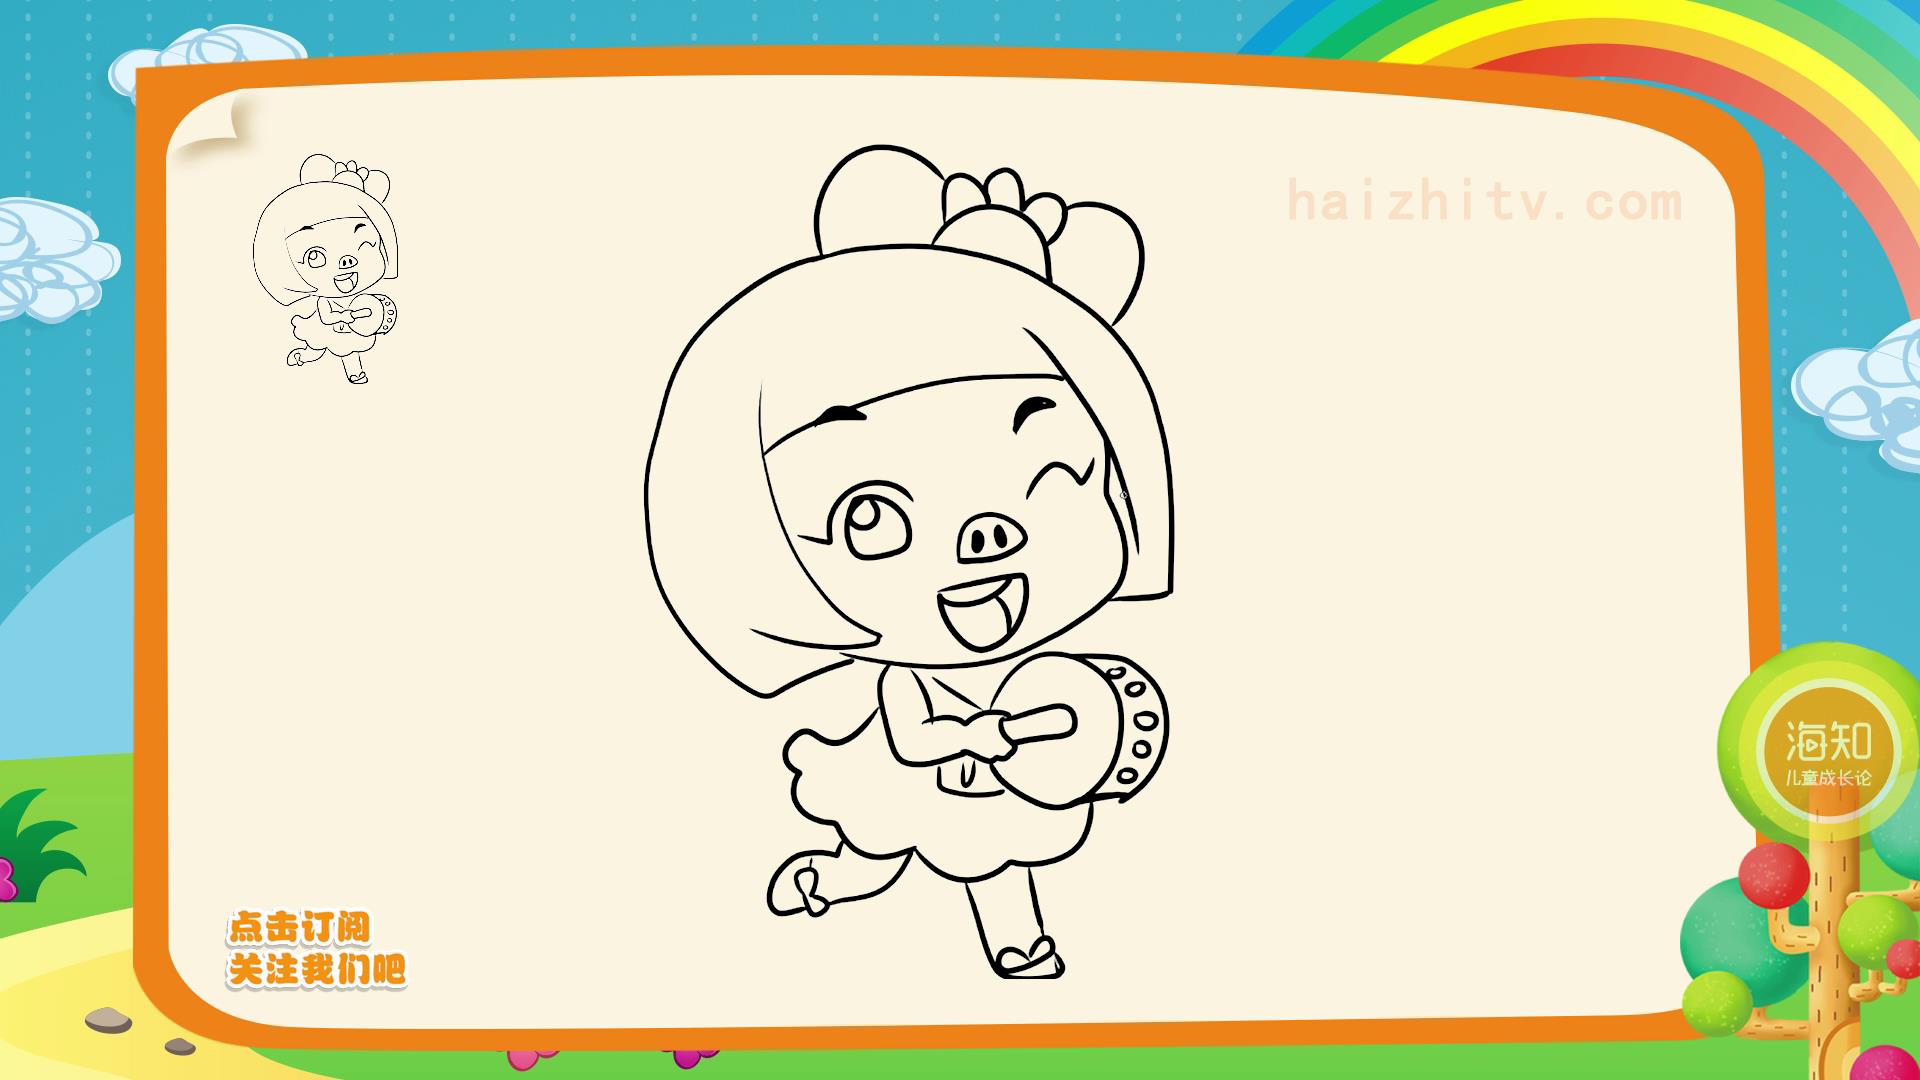 猪猪侠简笔画,4-6岁儿童学美术必备!